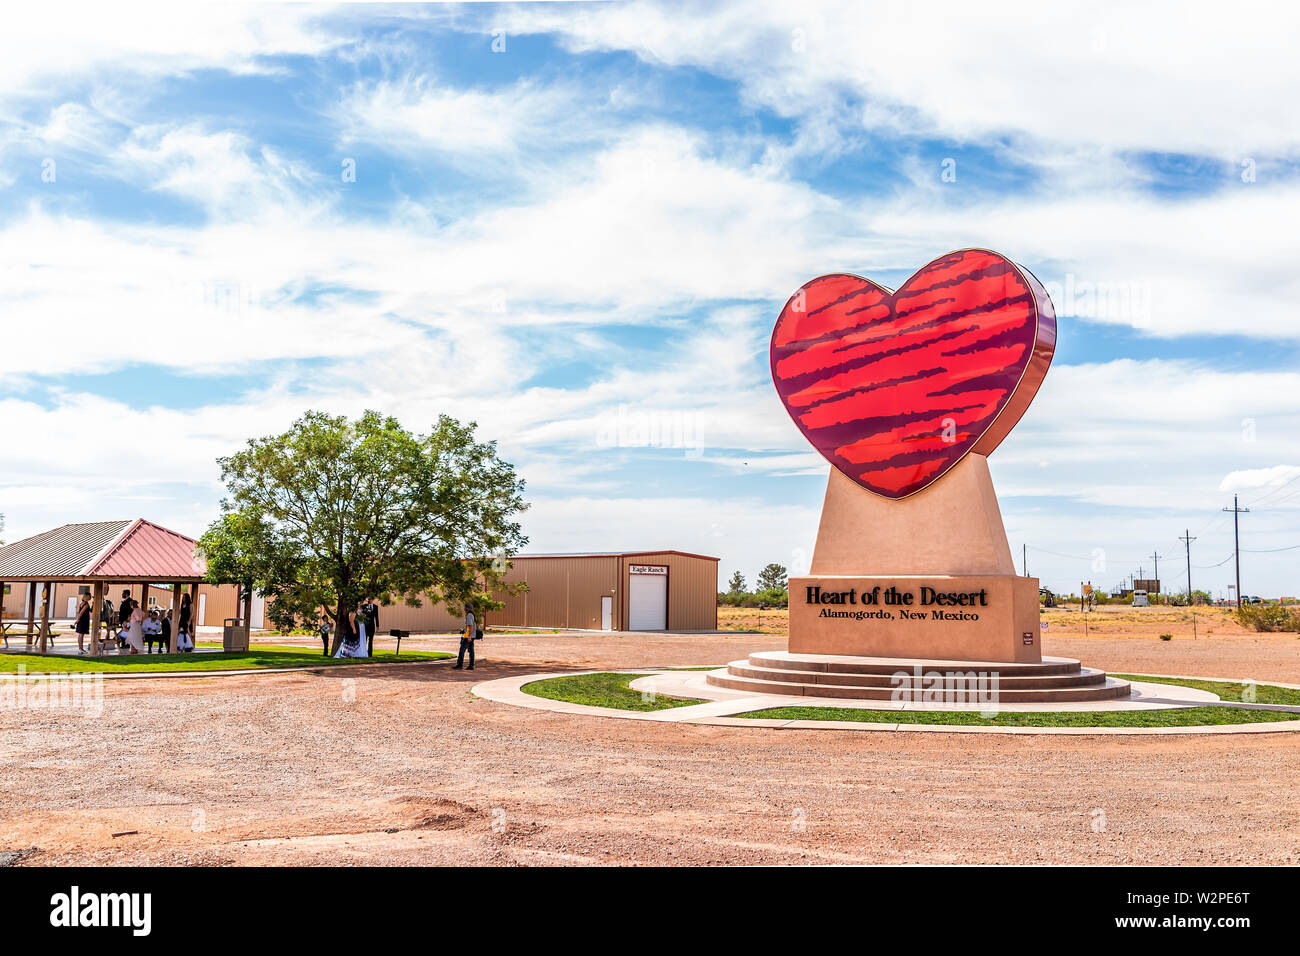 Alamogordo, USA - 9 juin 2019 : Nouveau Mexique pistachier ferme avec coeur du désert signe et personnes cérémonie de mariage Banque D'Images